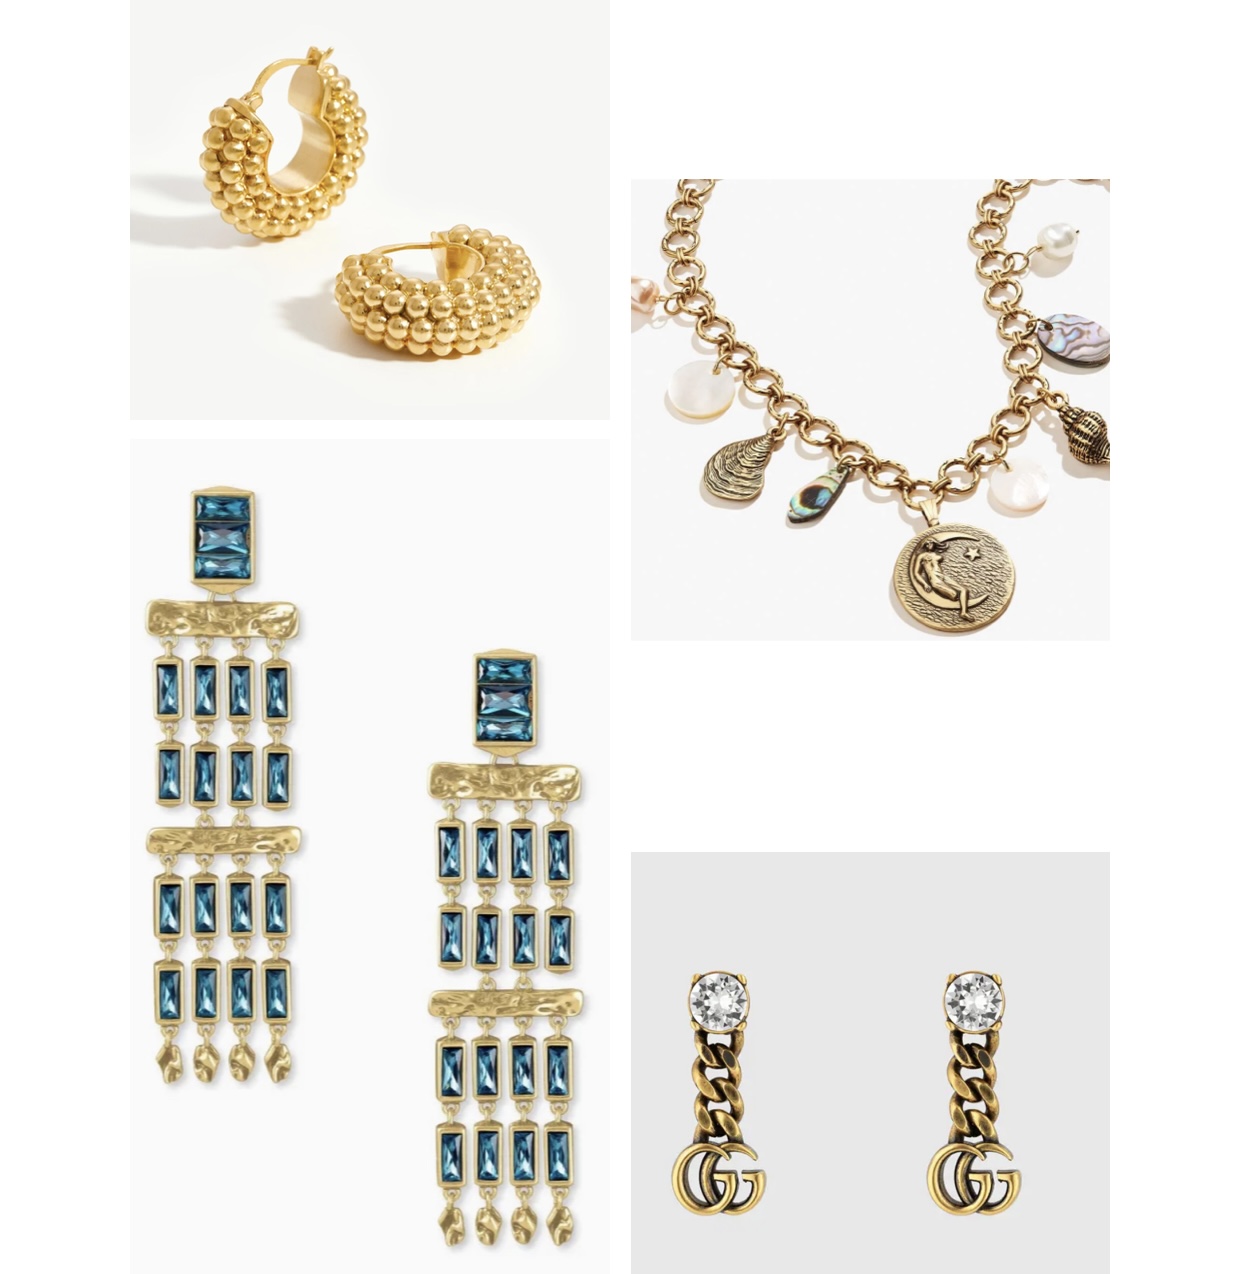 Costume Jewelry Examples